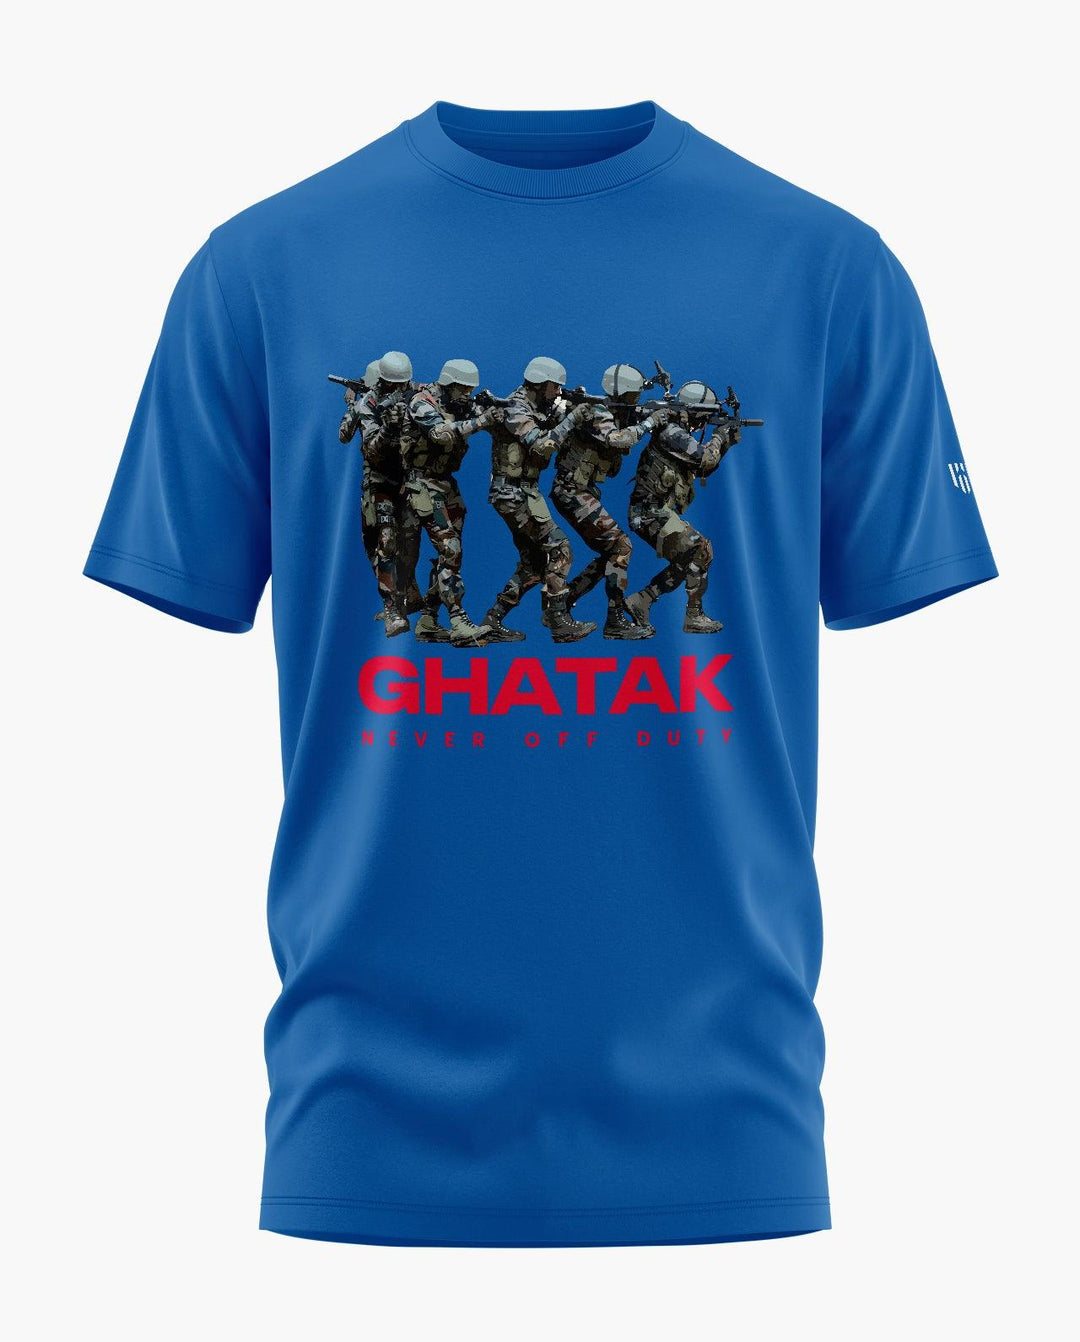 Ghatak Never Off Duty T-Shirt - Aero Armour